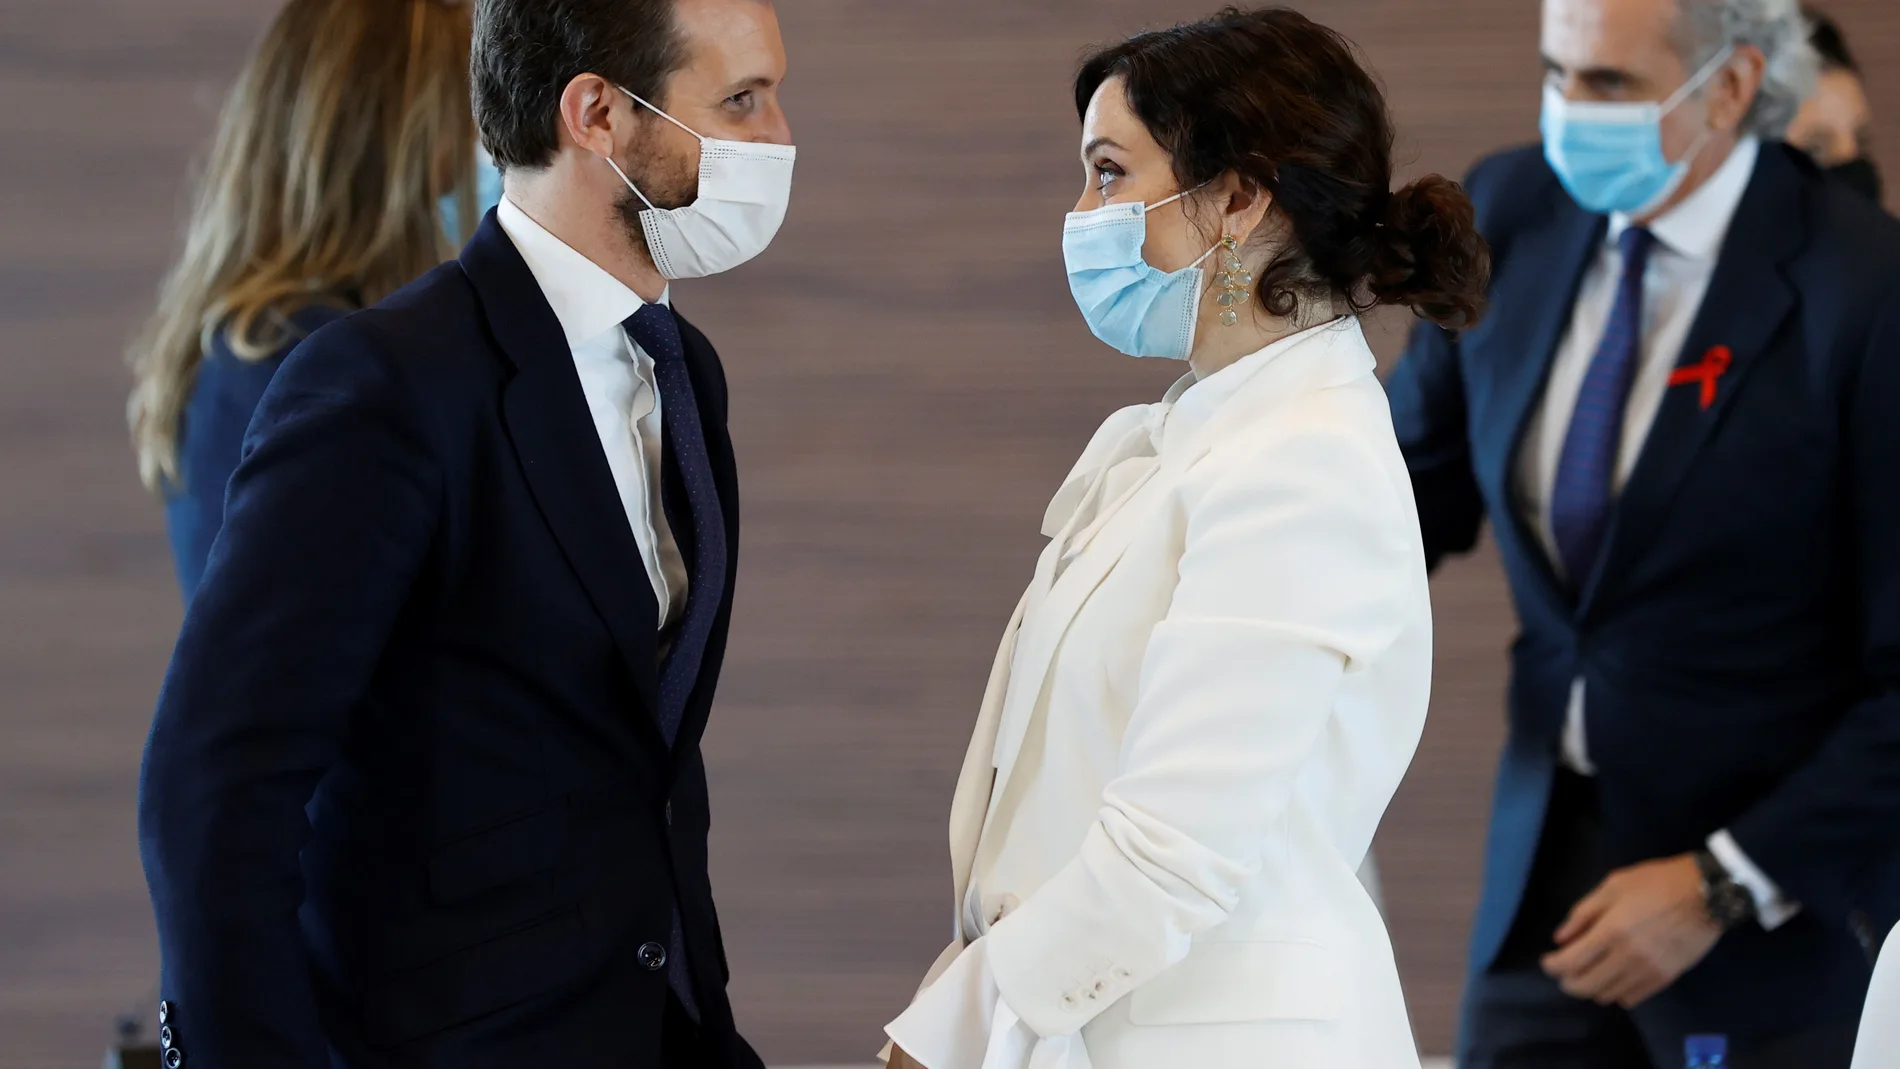 El presidente del PP, Pablo Casado y la presidenta de la Comunidad de Madrid, Isabel Díaz Ayuso durante el acto de inauguración del nuevo hospital de Emergencias Enfermera Isabel Zendal.